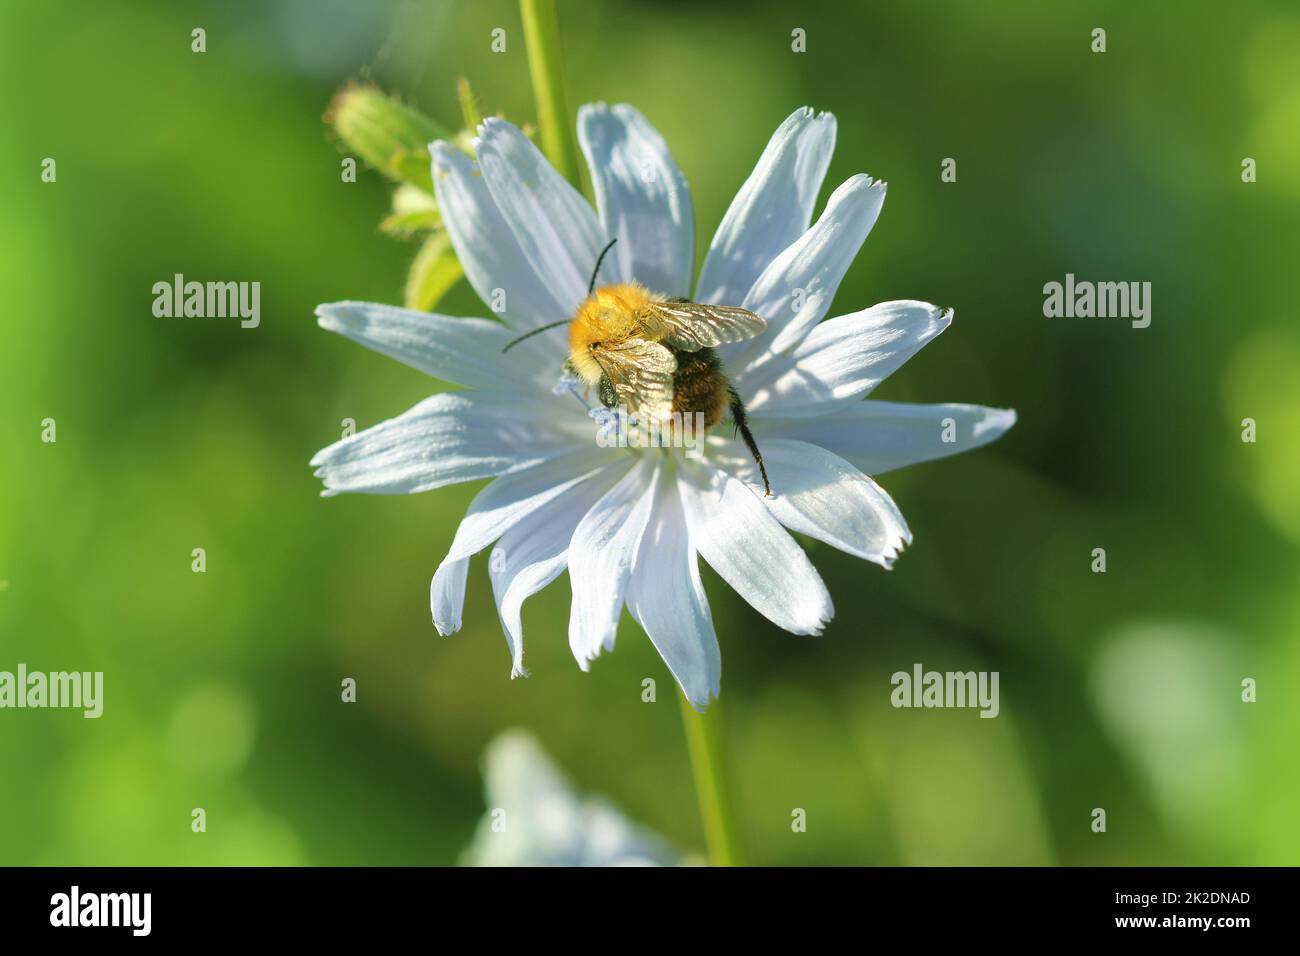 Chicorée Blume bloosom, eine Biene pollinates eine Blume der Zichorie Stockfoto